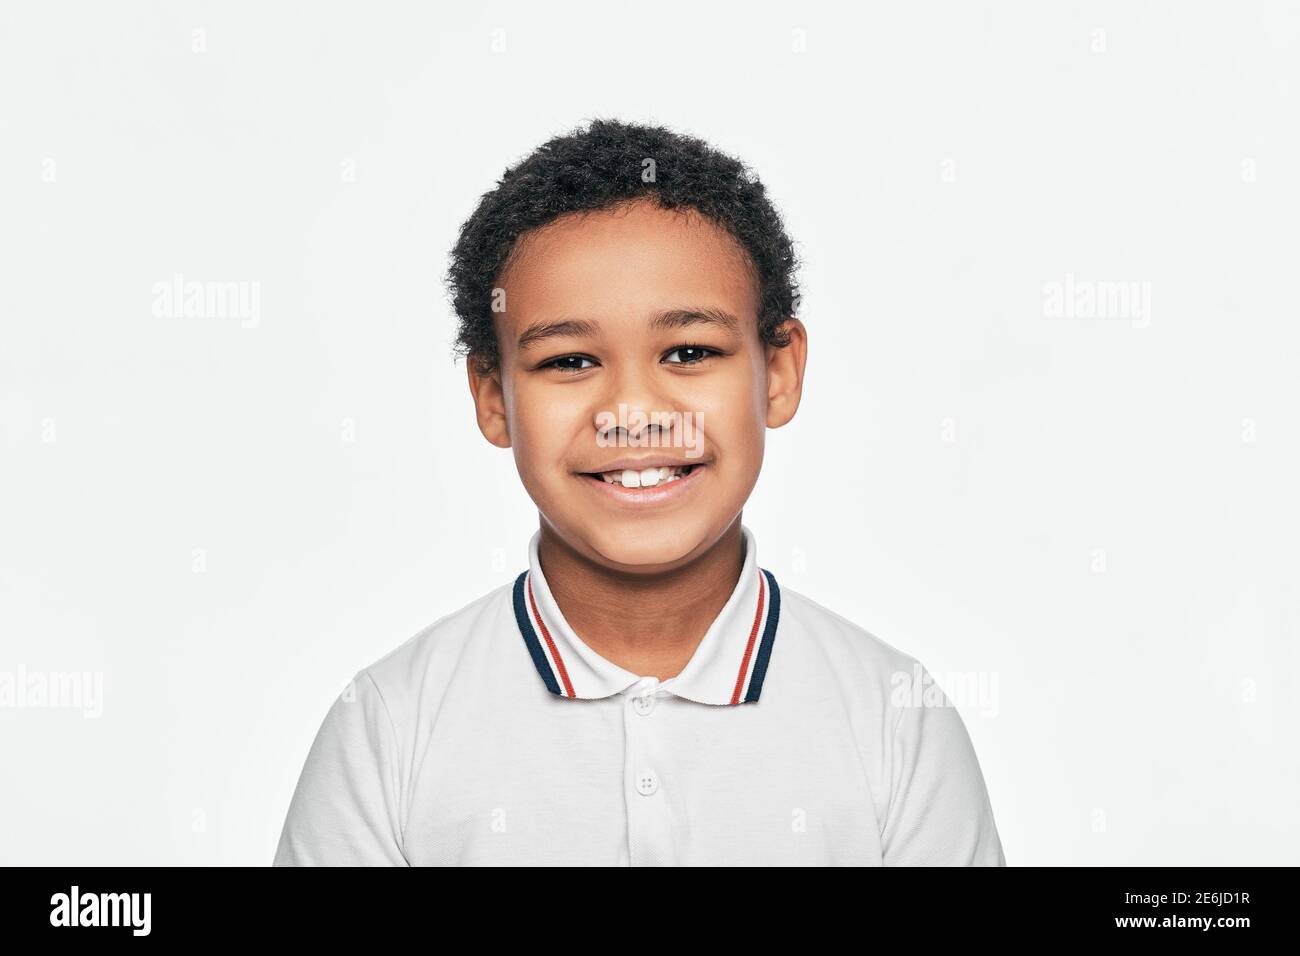 Porträt eines schönen afroamerikanischen Jungen mit toothy Lächeln. Isoliert auf weißem Hintergrund Stockfoto